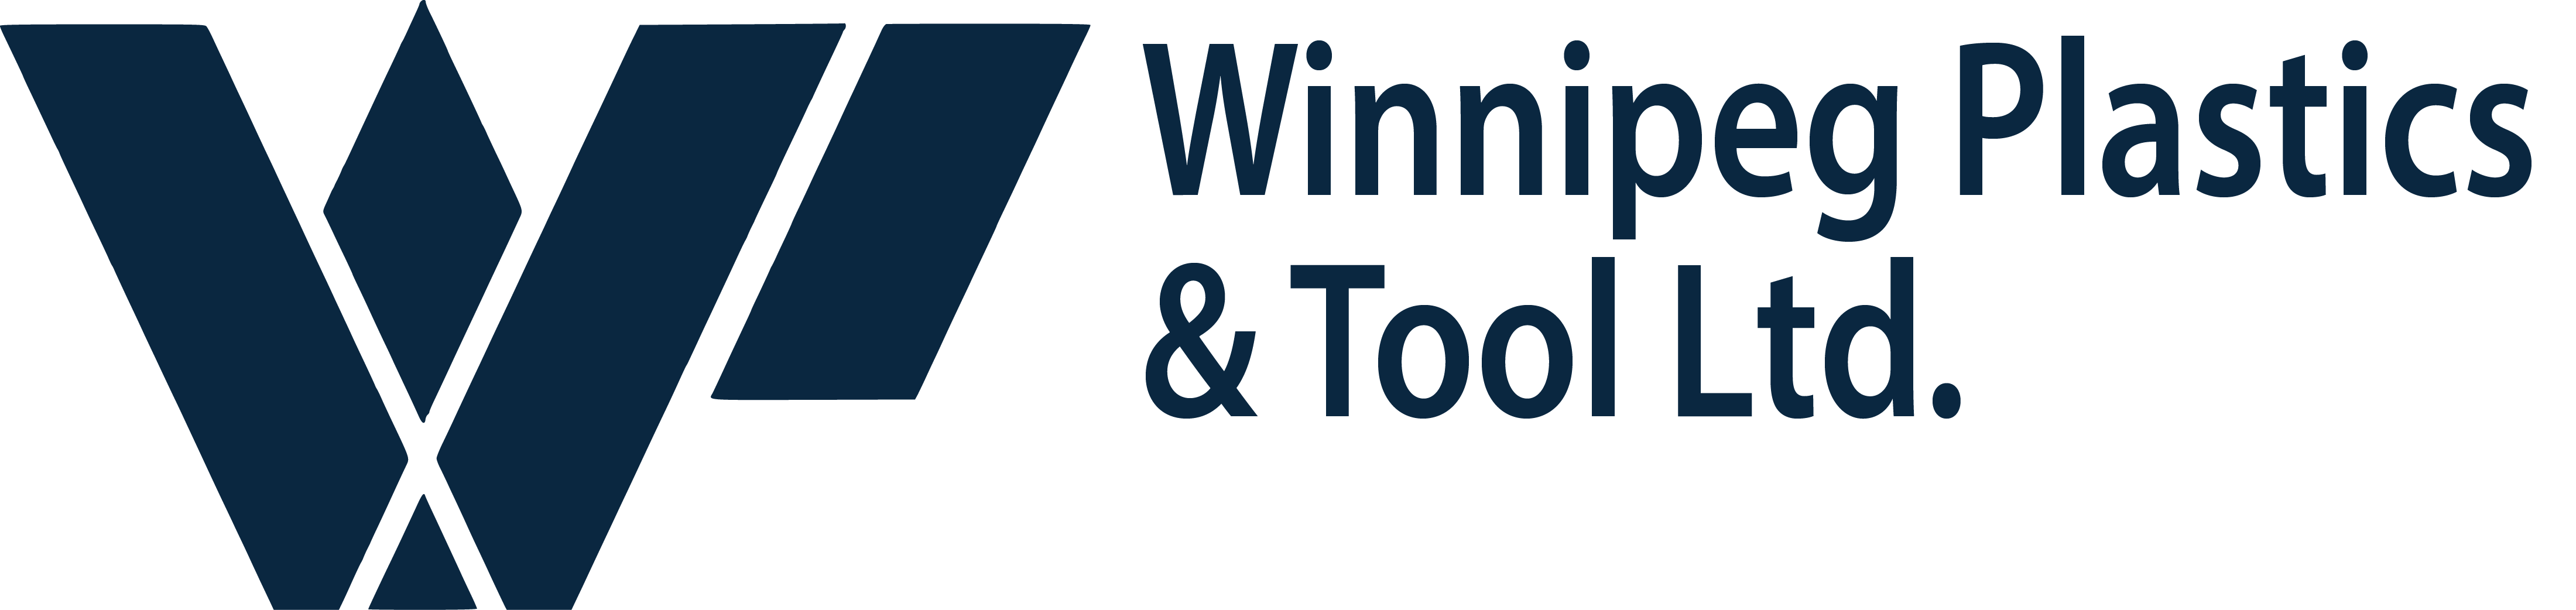 Winnipeg Plastics & Tool Ltd